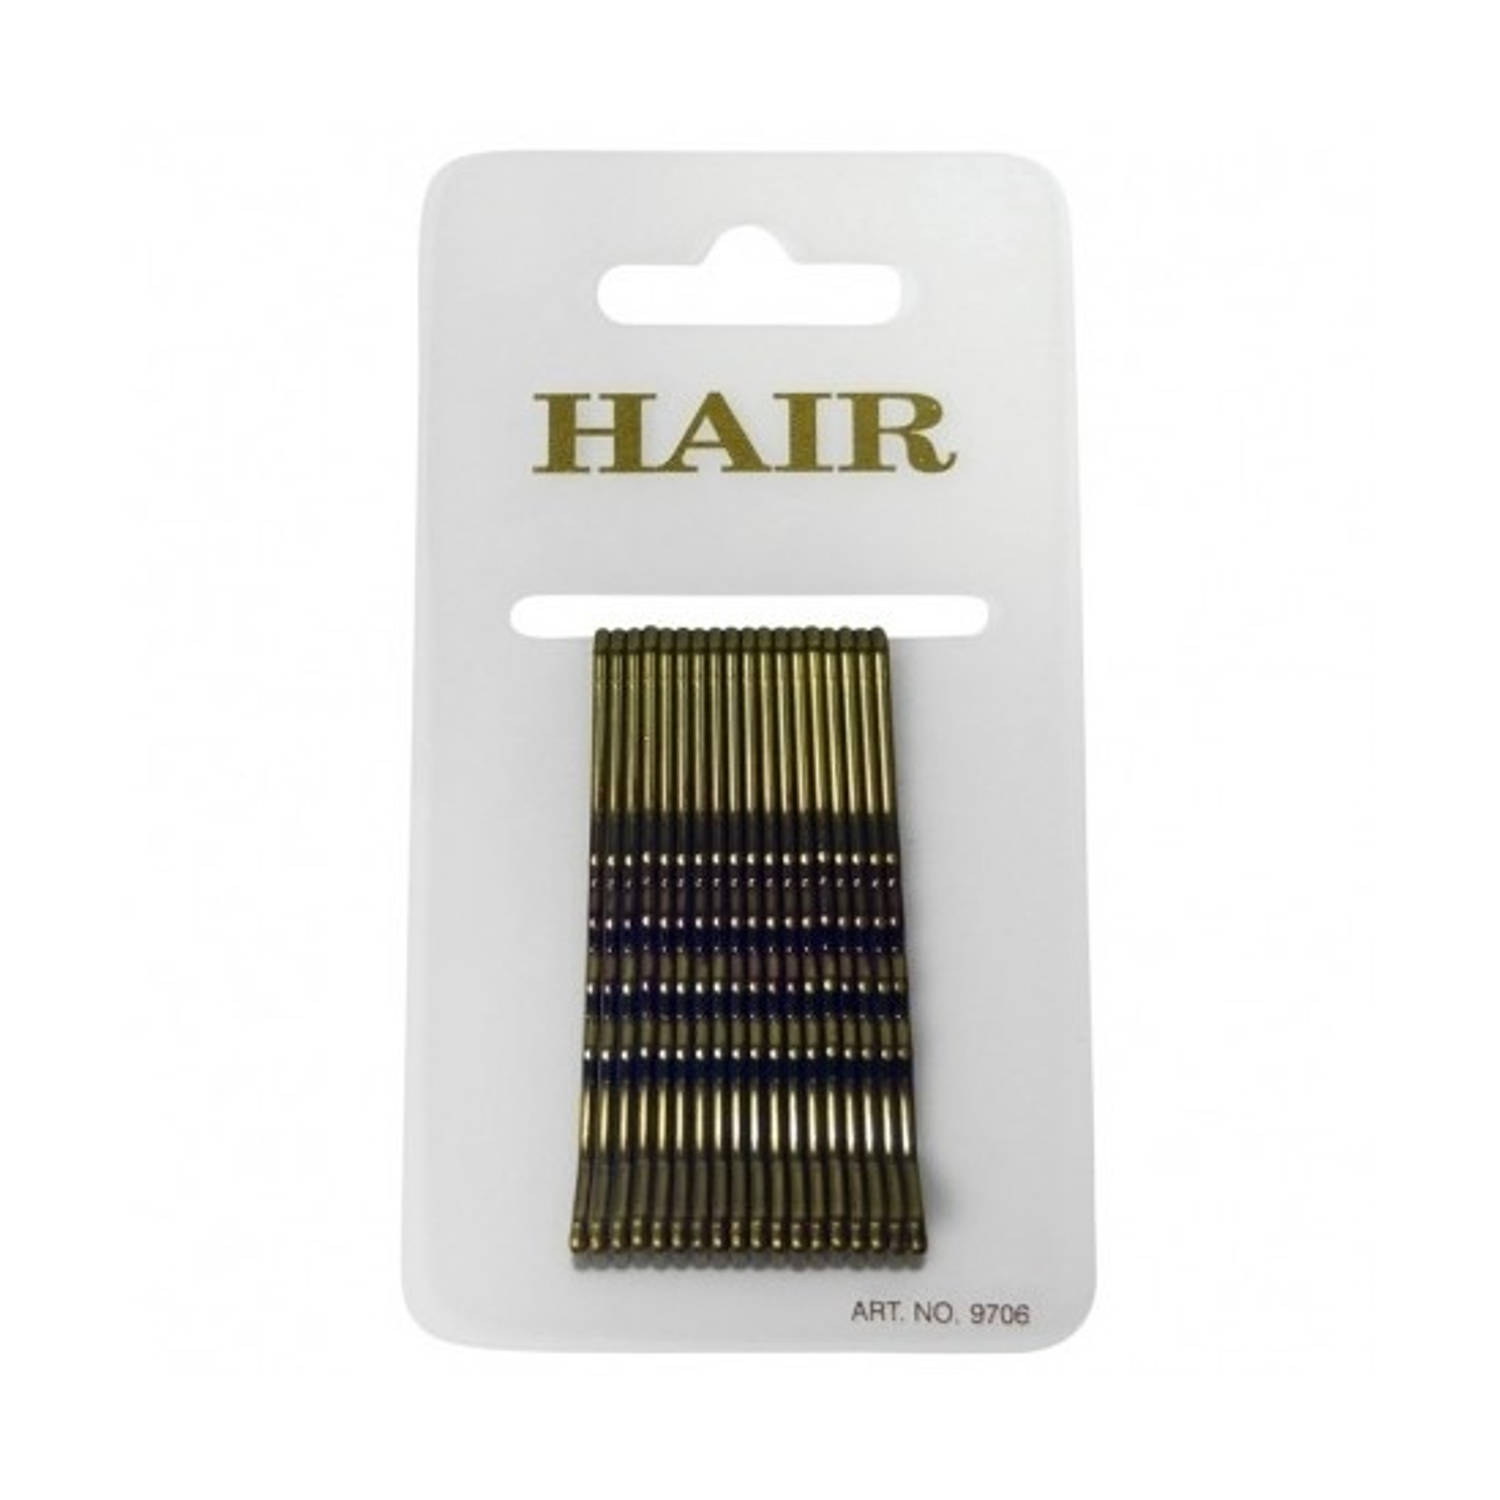 36x Stuks gouden pins haarspeldjes 6 cm - Haarspeldjes